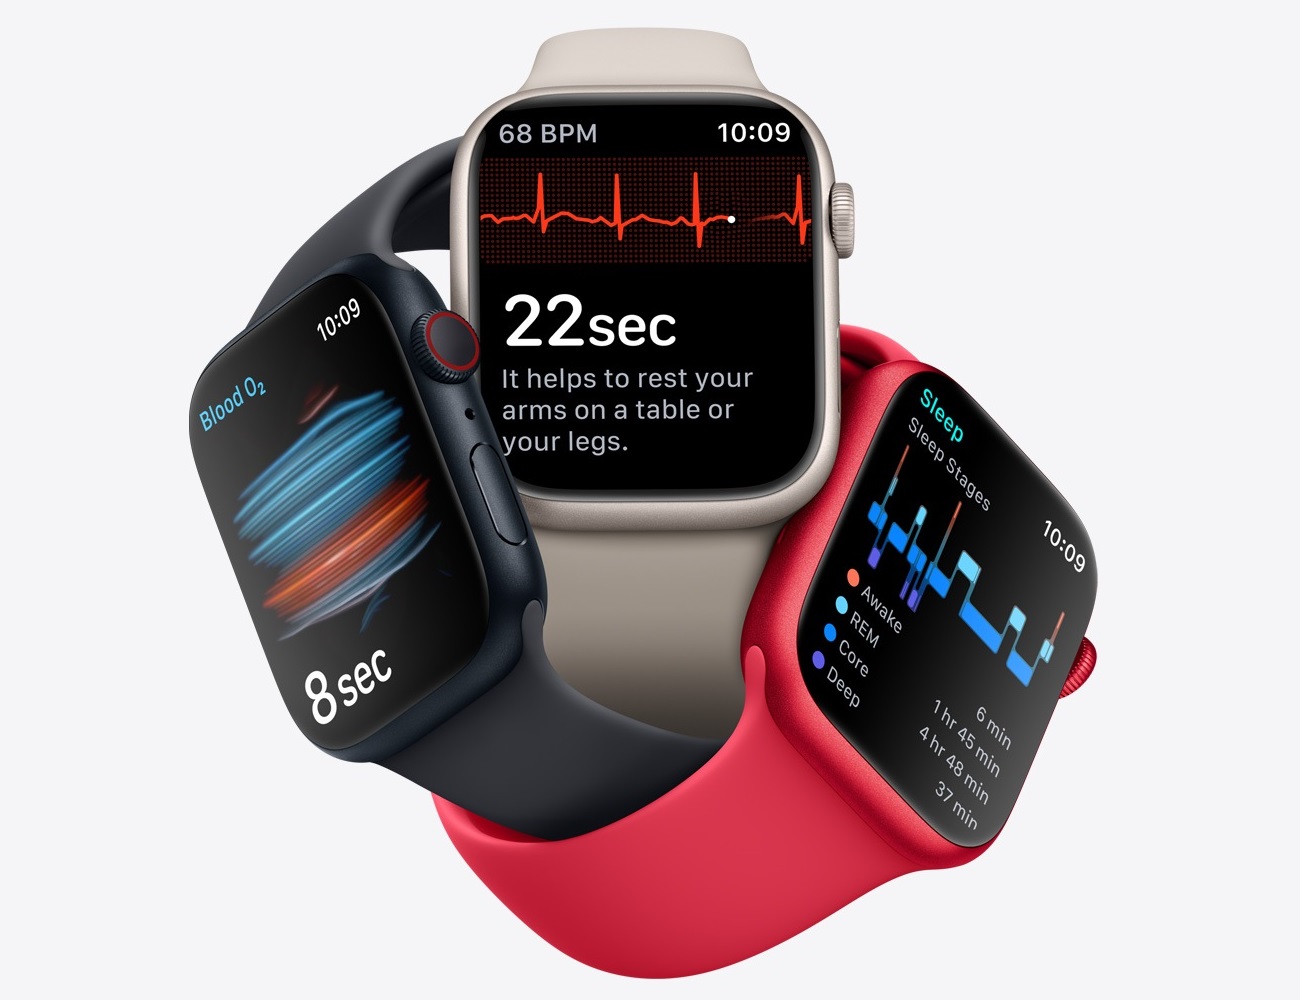 Chytré hodinky Apple Watch Series 8 podporují funkci SpO2 (oxymetr), která vyjadřuje úroveň saturace kyslíkem v krvi.